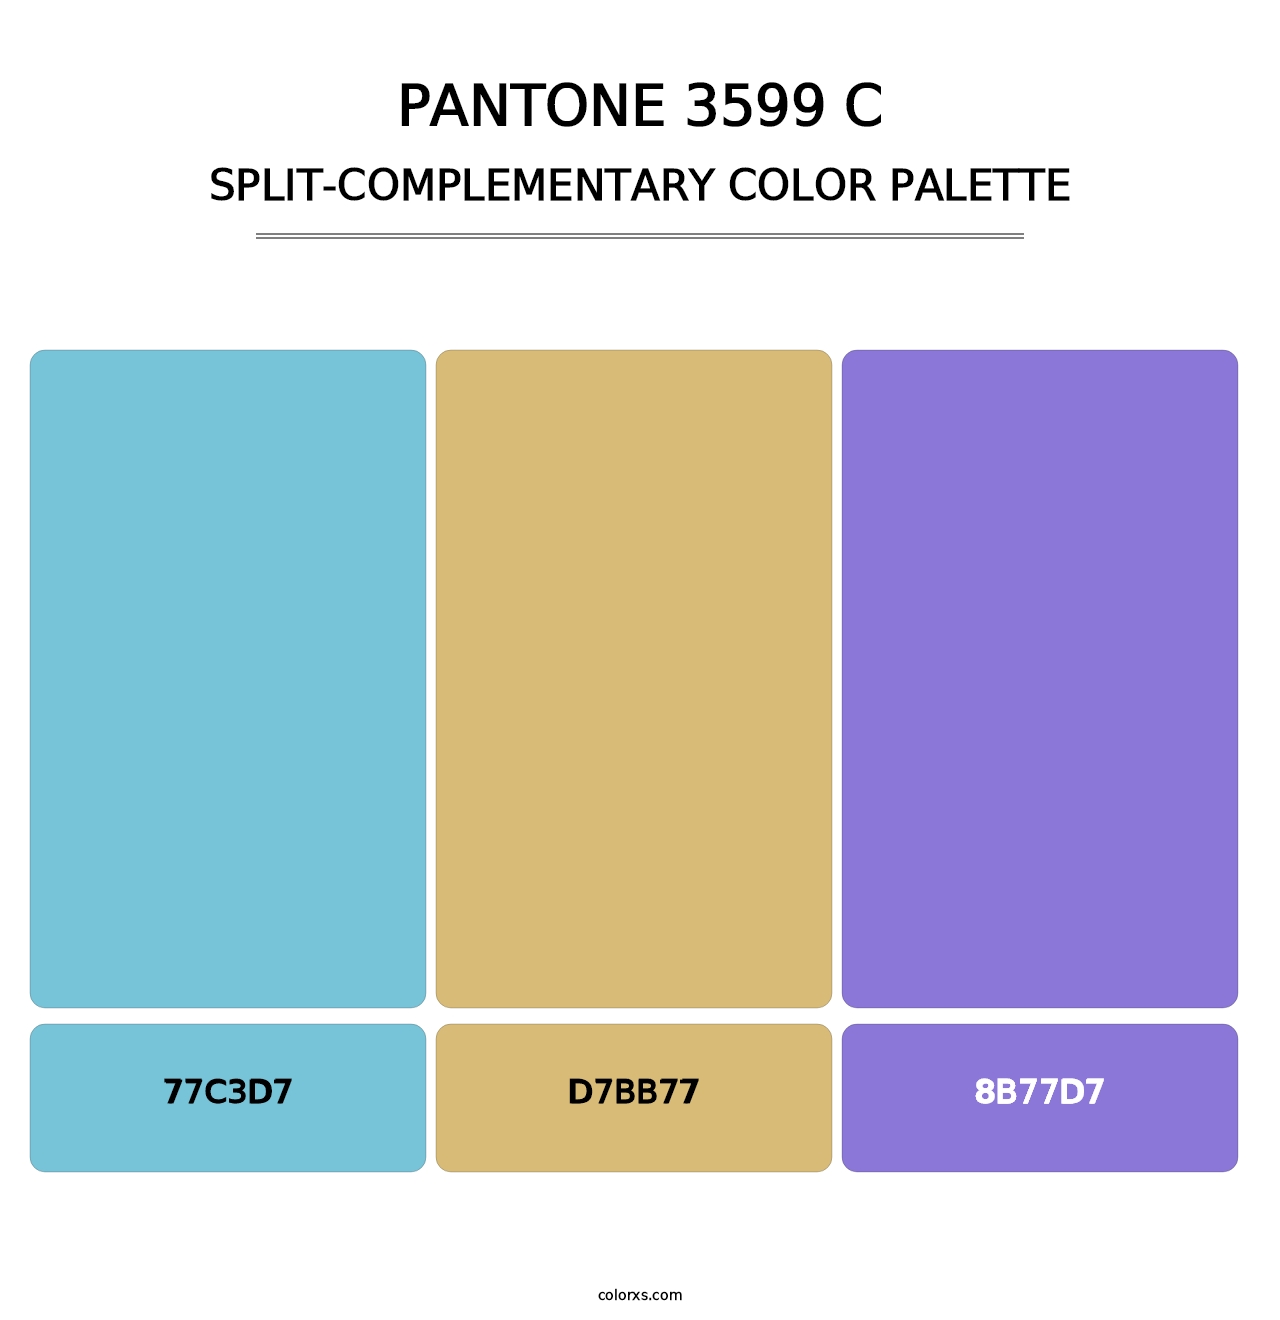 PANTONE 3599 C - Split-Complementary Color Palette